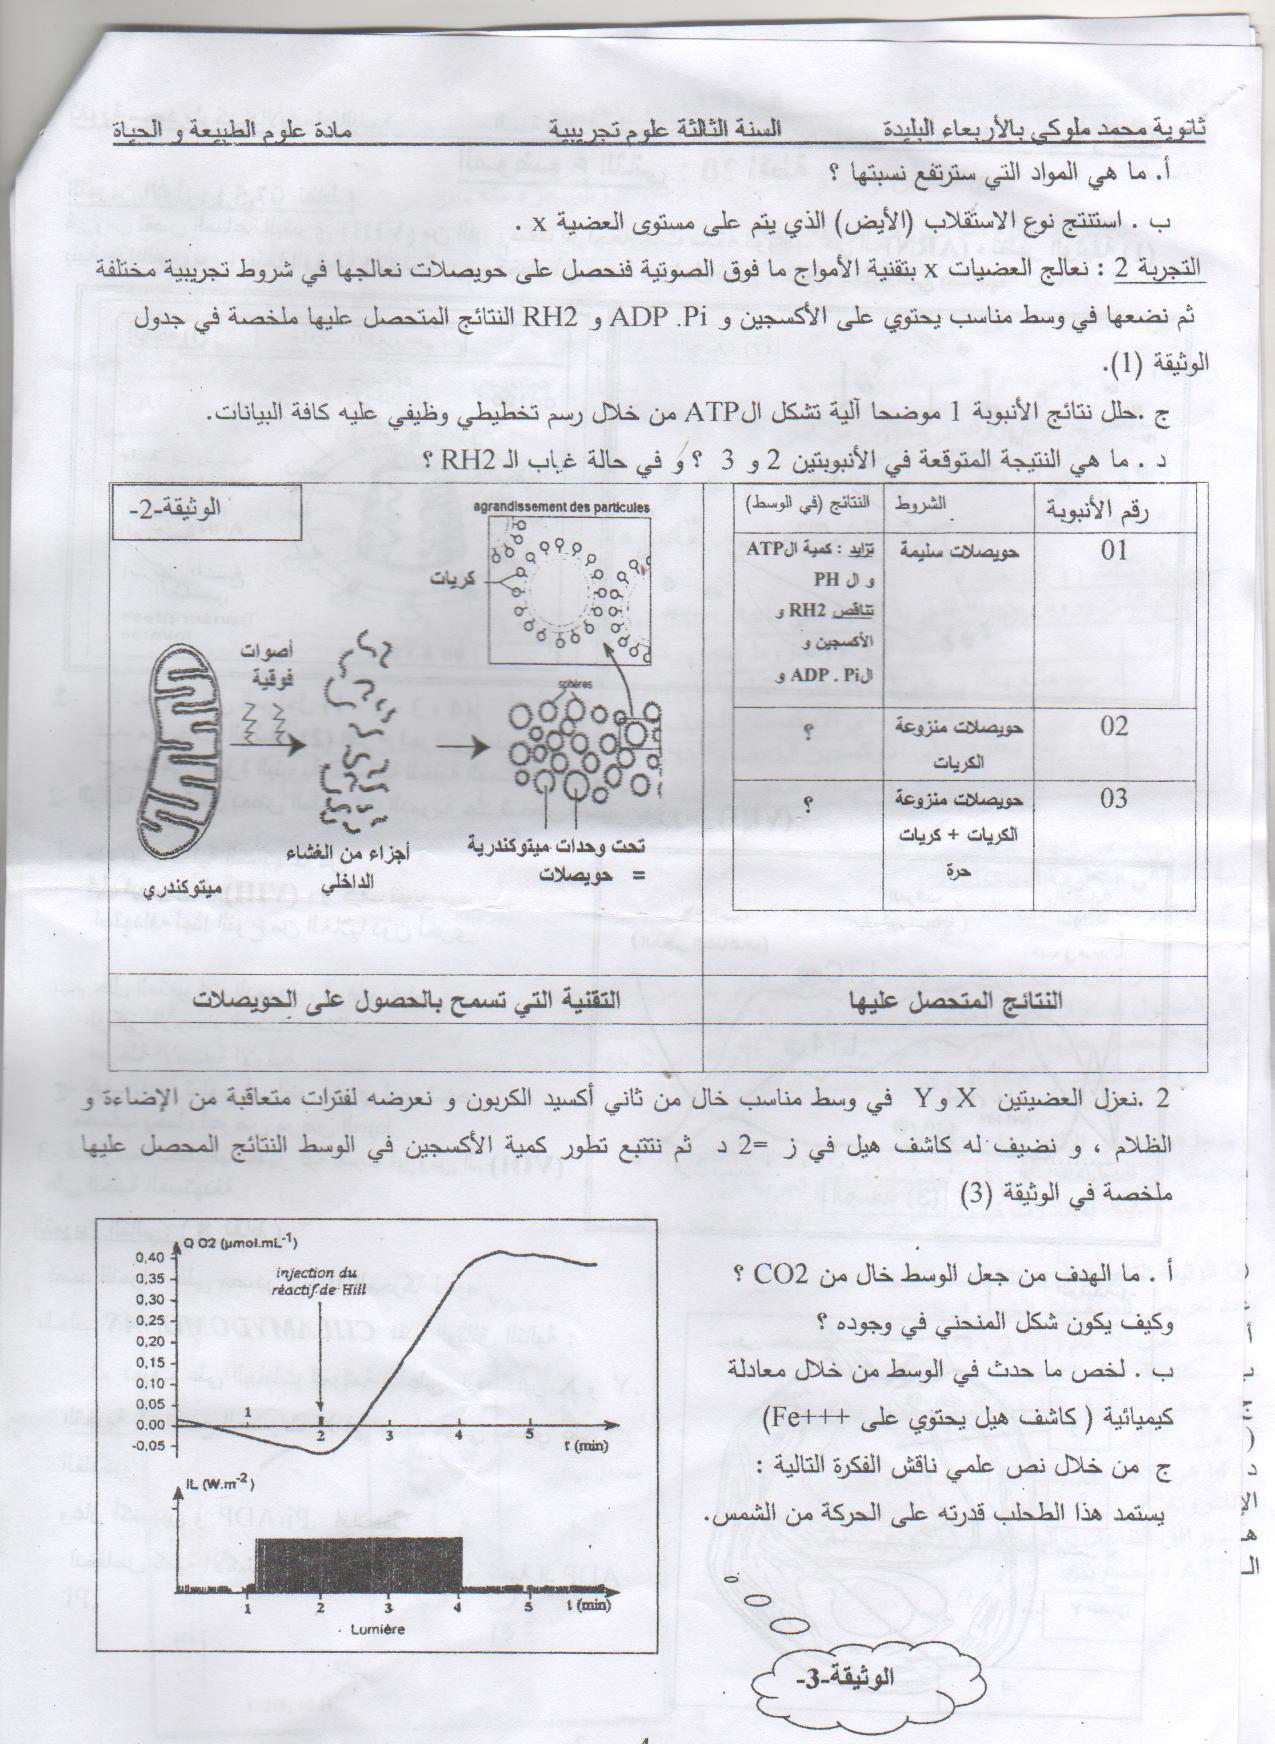 حصريا على منتديات سراج الأقصى الأنيس البكالوريا التجريبي في جميع المواد لثانوية محمد ملوكي بالبليدة 13069388951